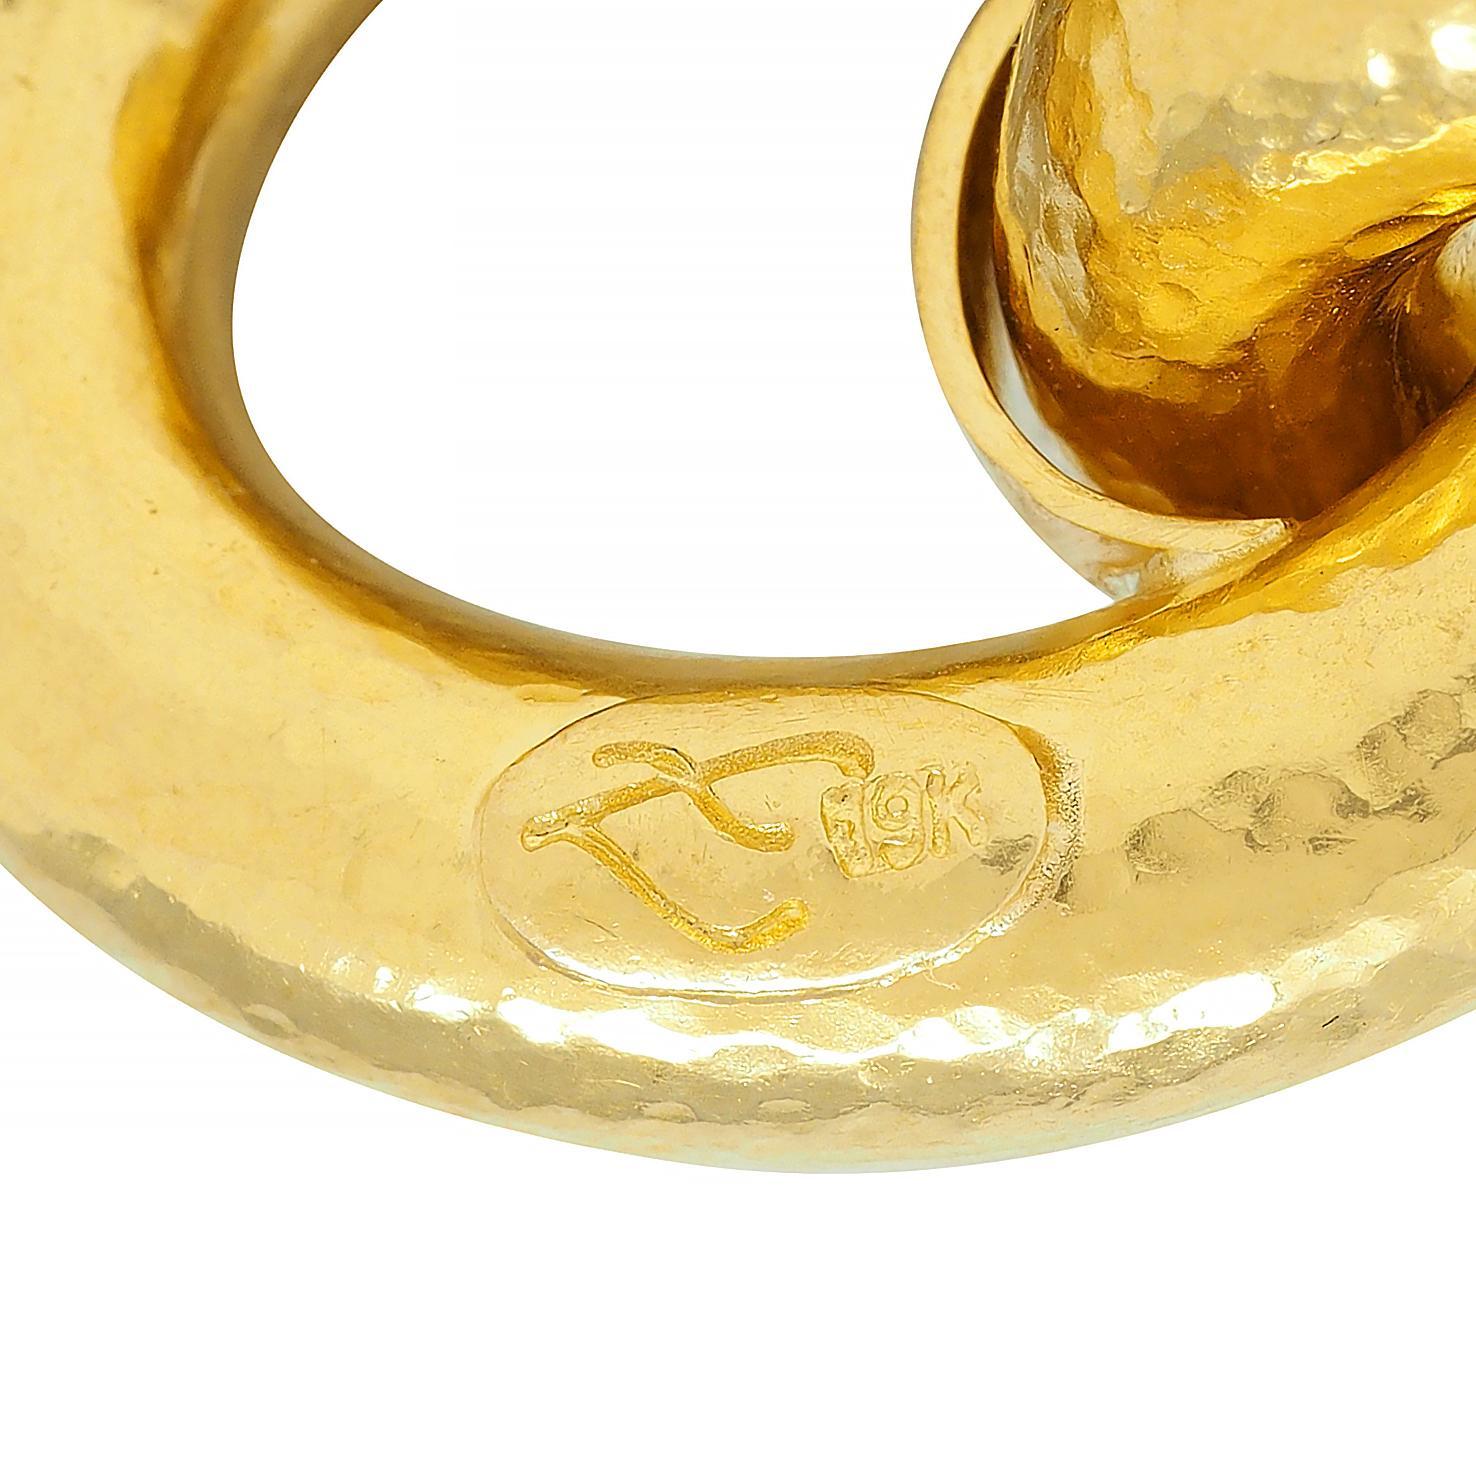 Elizabeth Locke Vintage 19 Karat Yellow Gold Hammered Link Bracelet For Sale 1